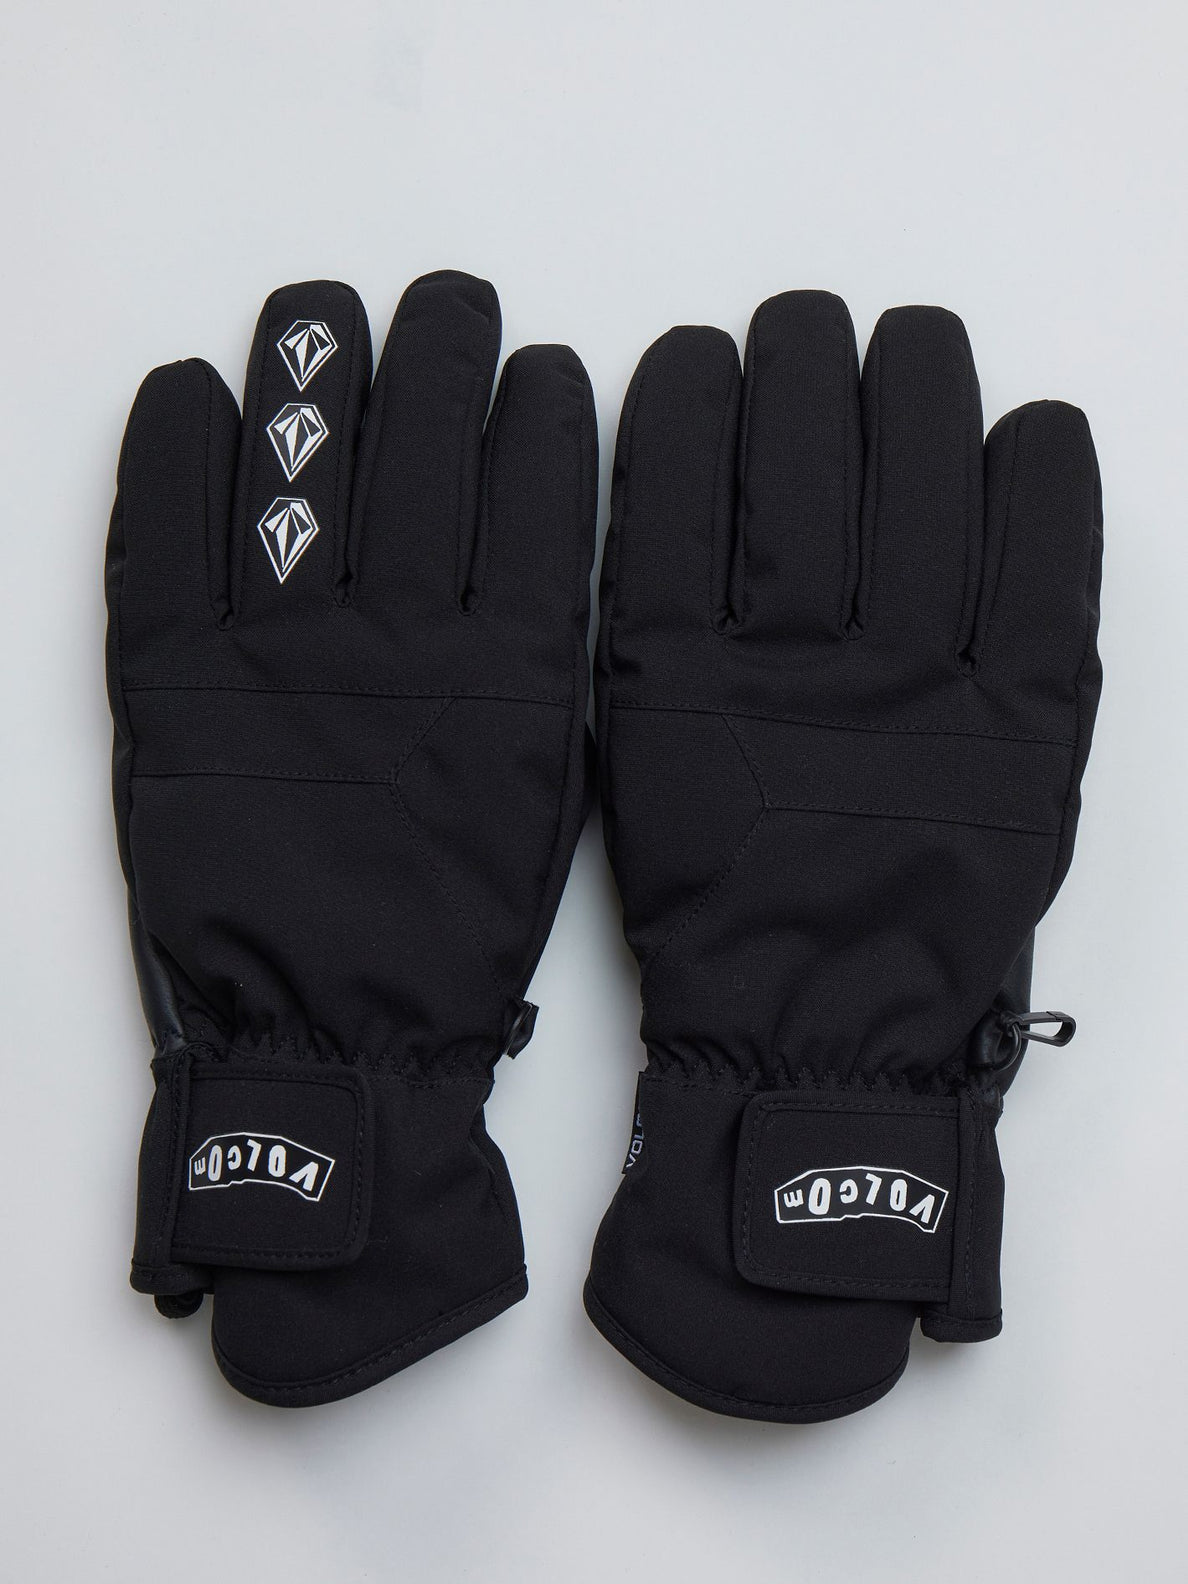 Jp Stn Glove - Black